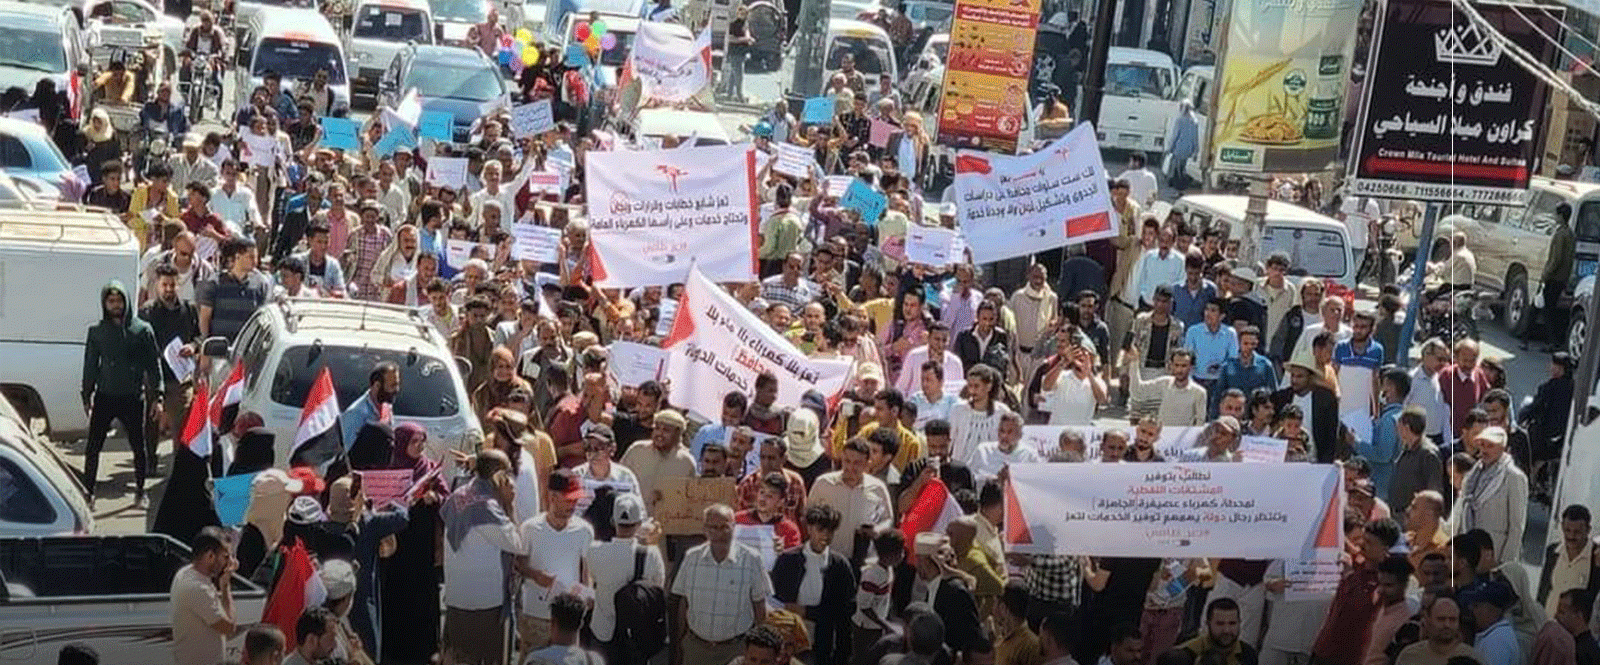 مظاهرة حاشدة في شارع جمال بتعز للمطالبة بتشغيل الكهرباء الحكومية